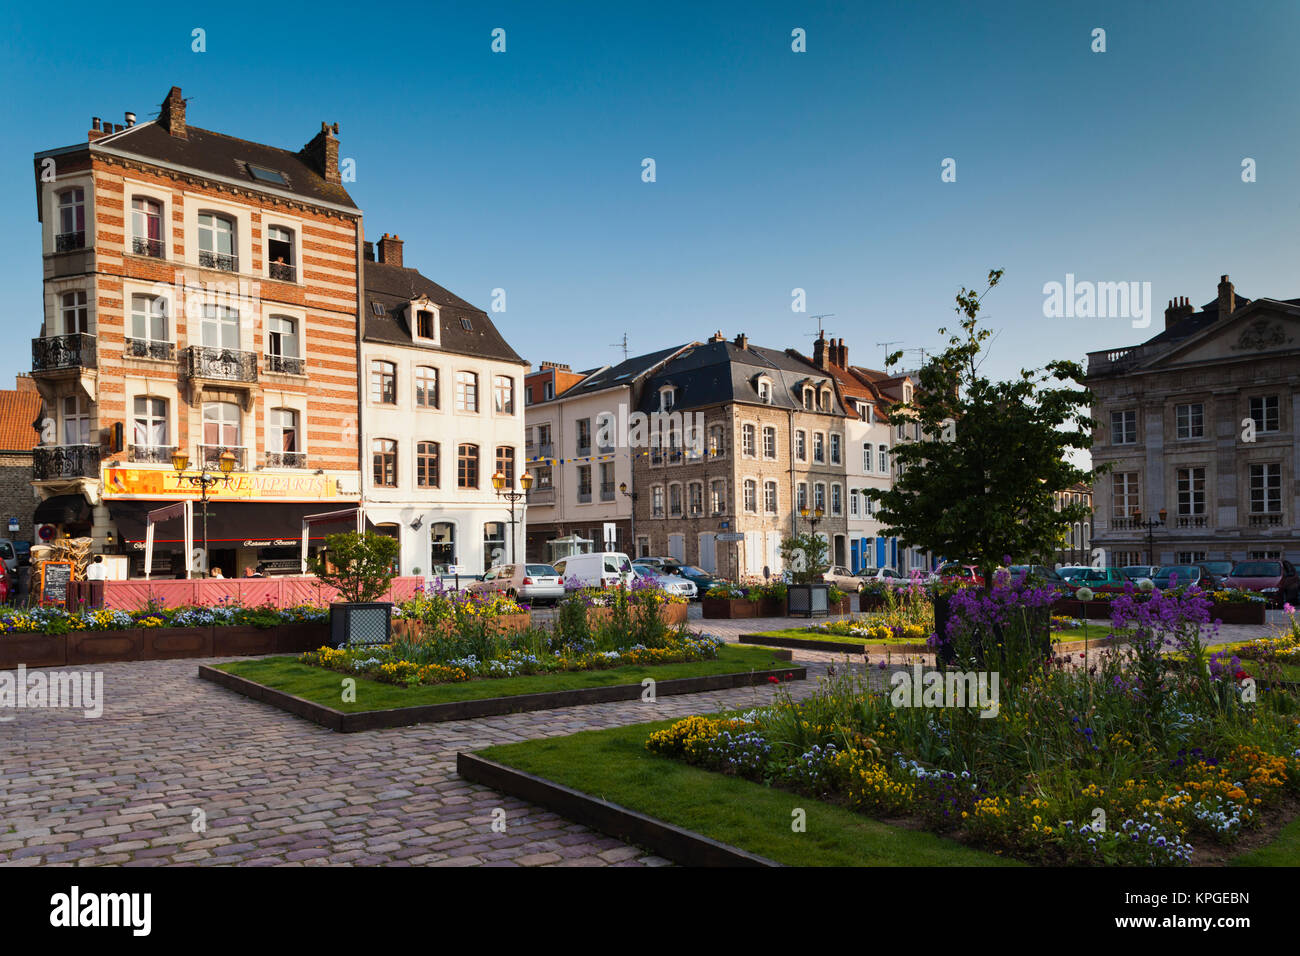 France, Pas de Calais, Boulogne sur Mer, Haut Ville, Upper City, Place Godefroy de Bouillon. Stock Photo